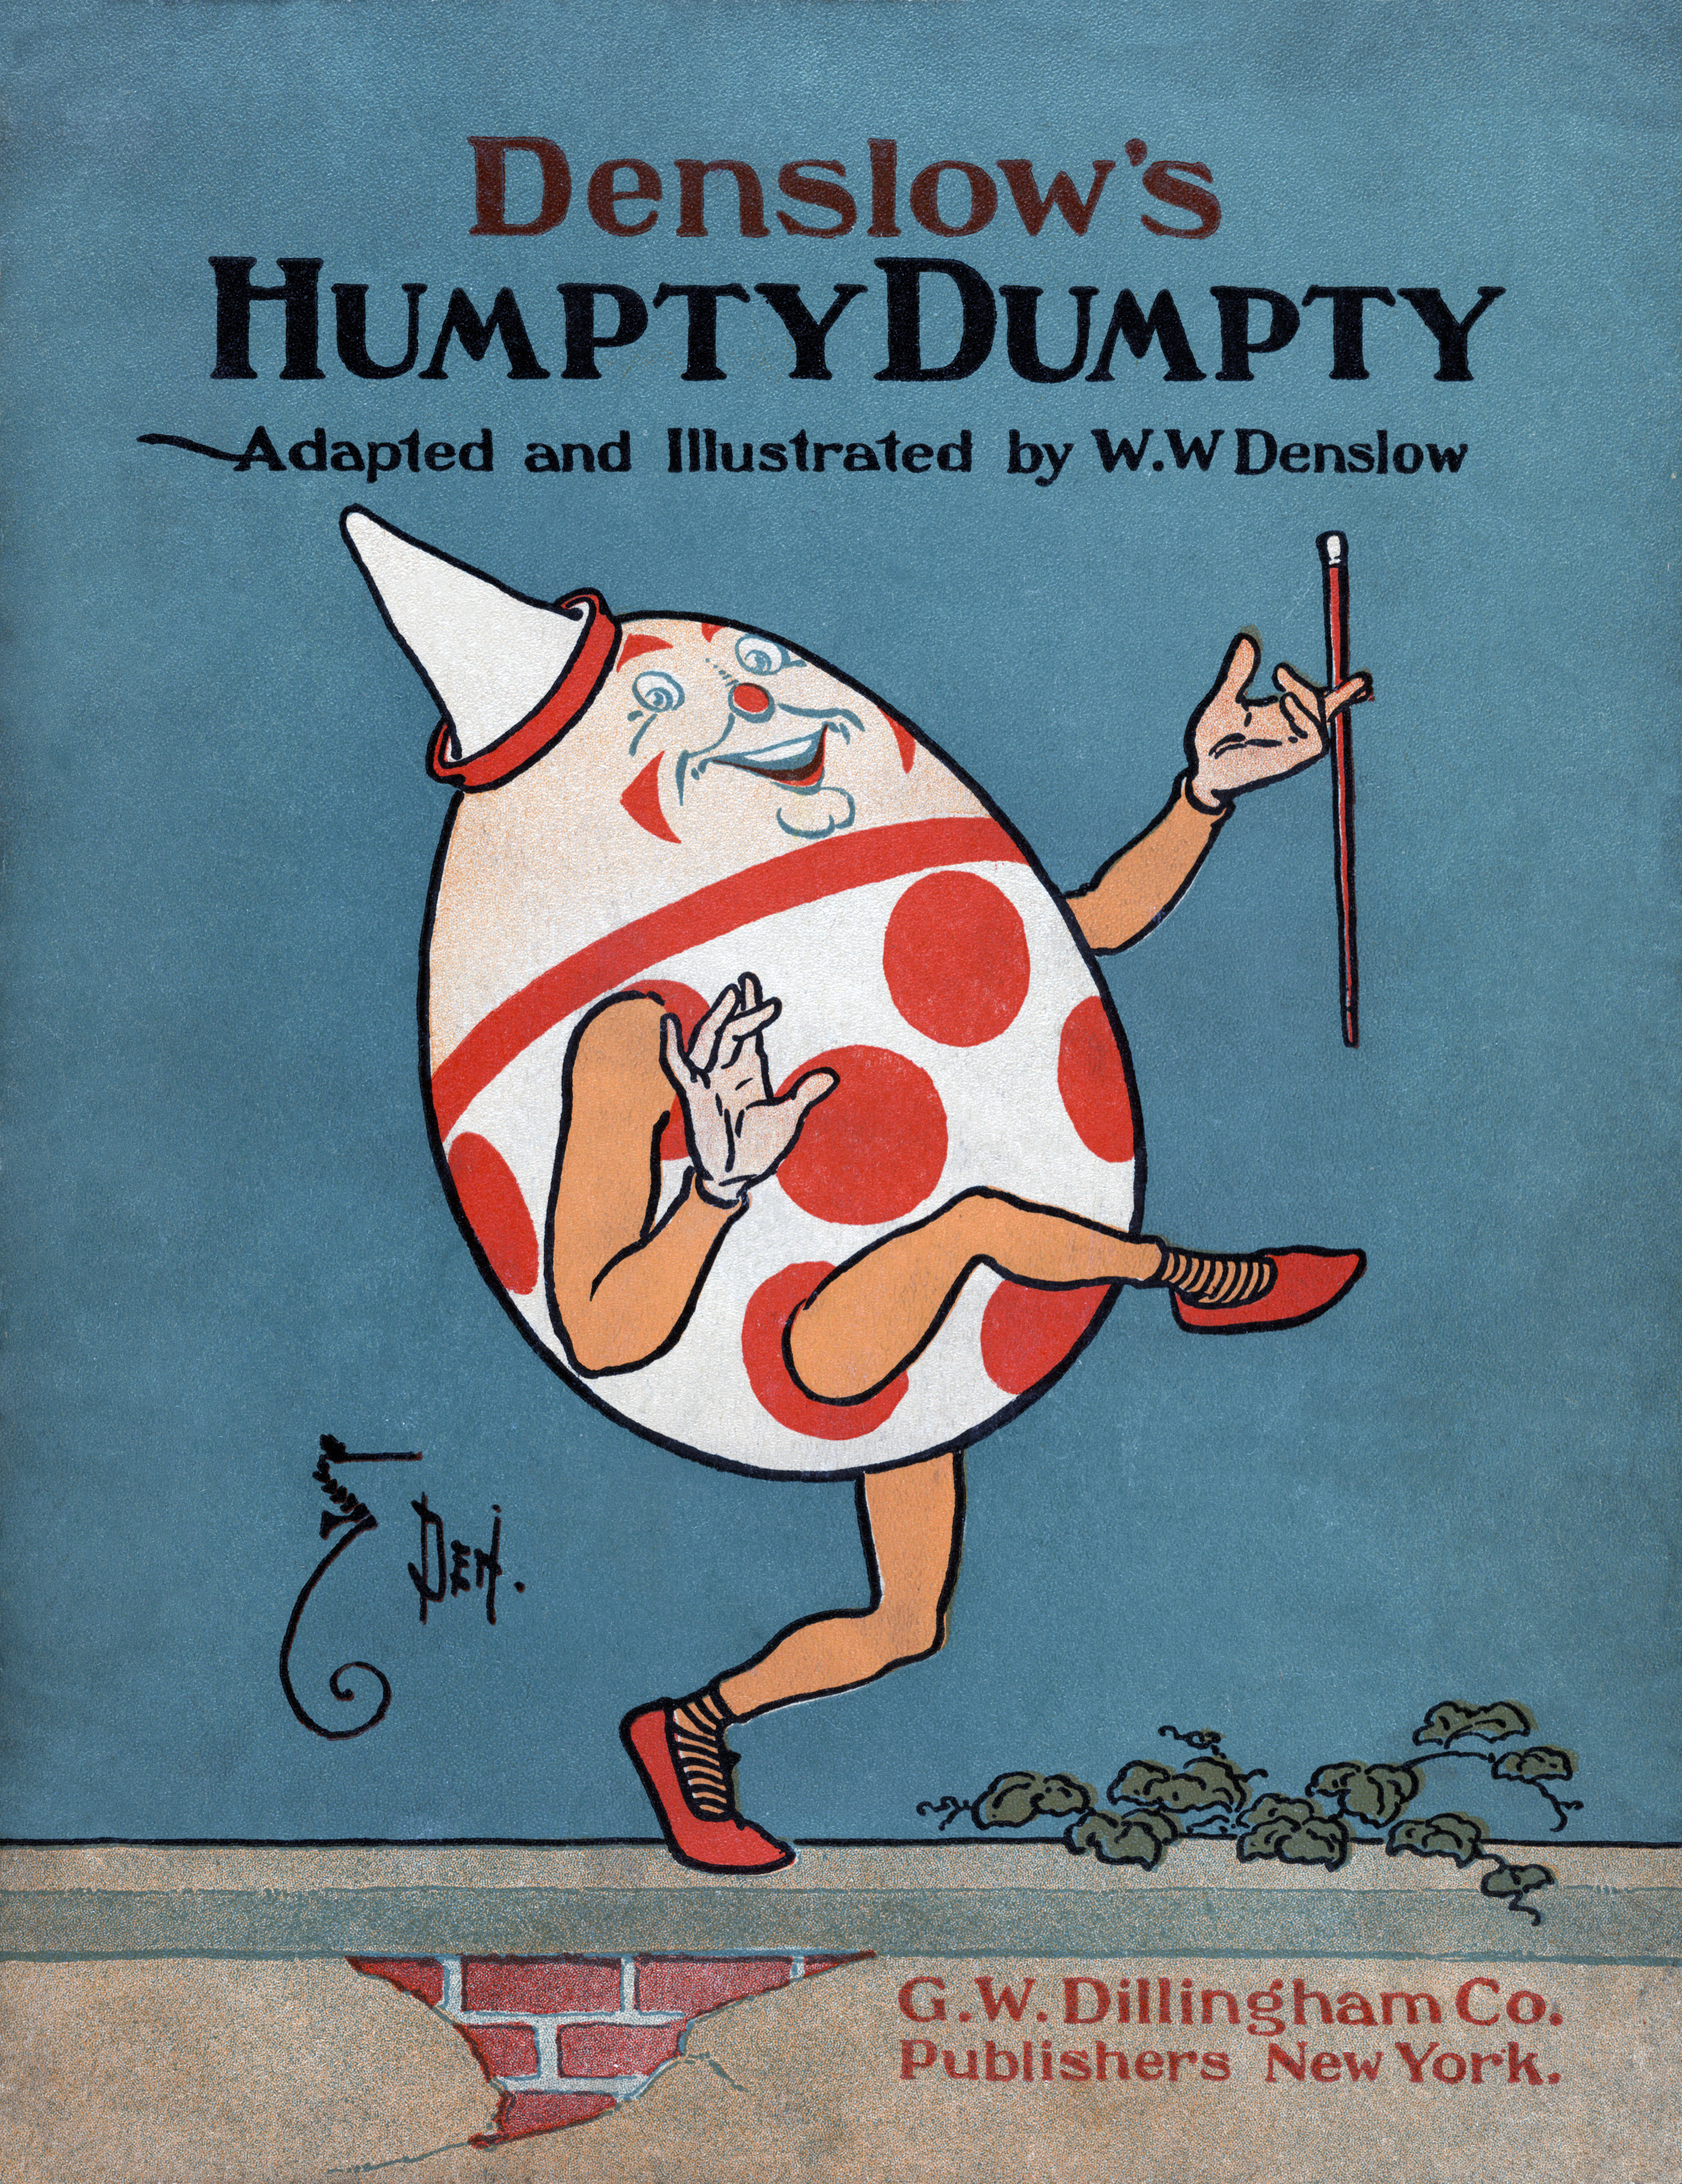 Humpty Dumpty - Wikipedia